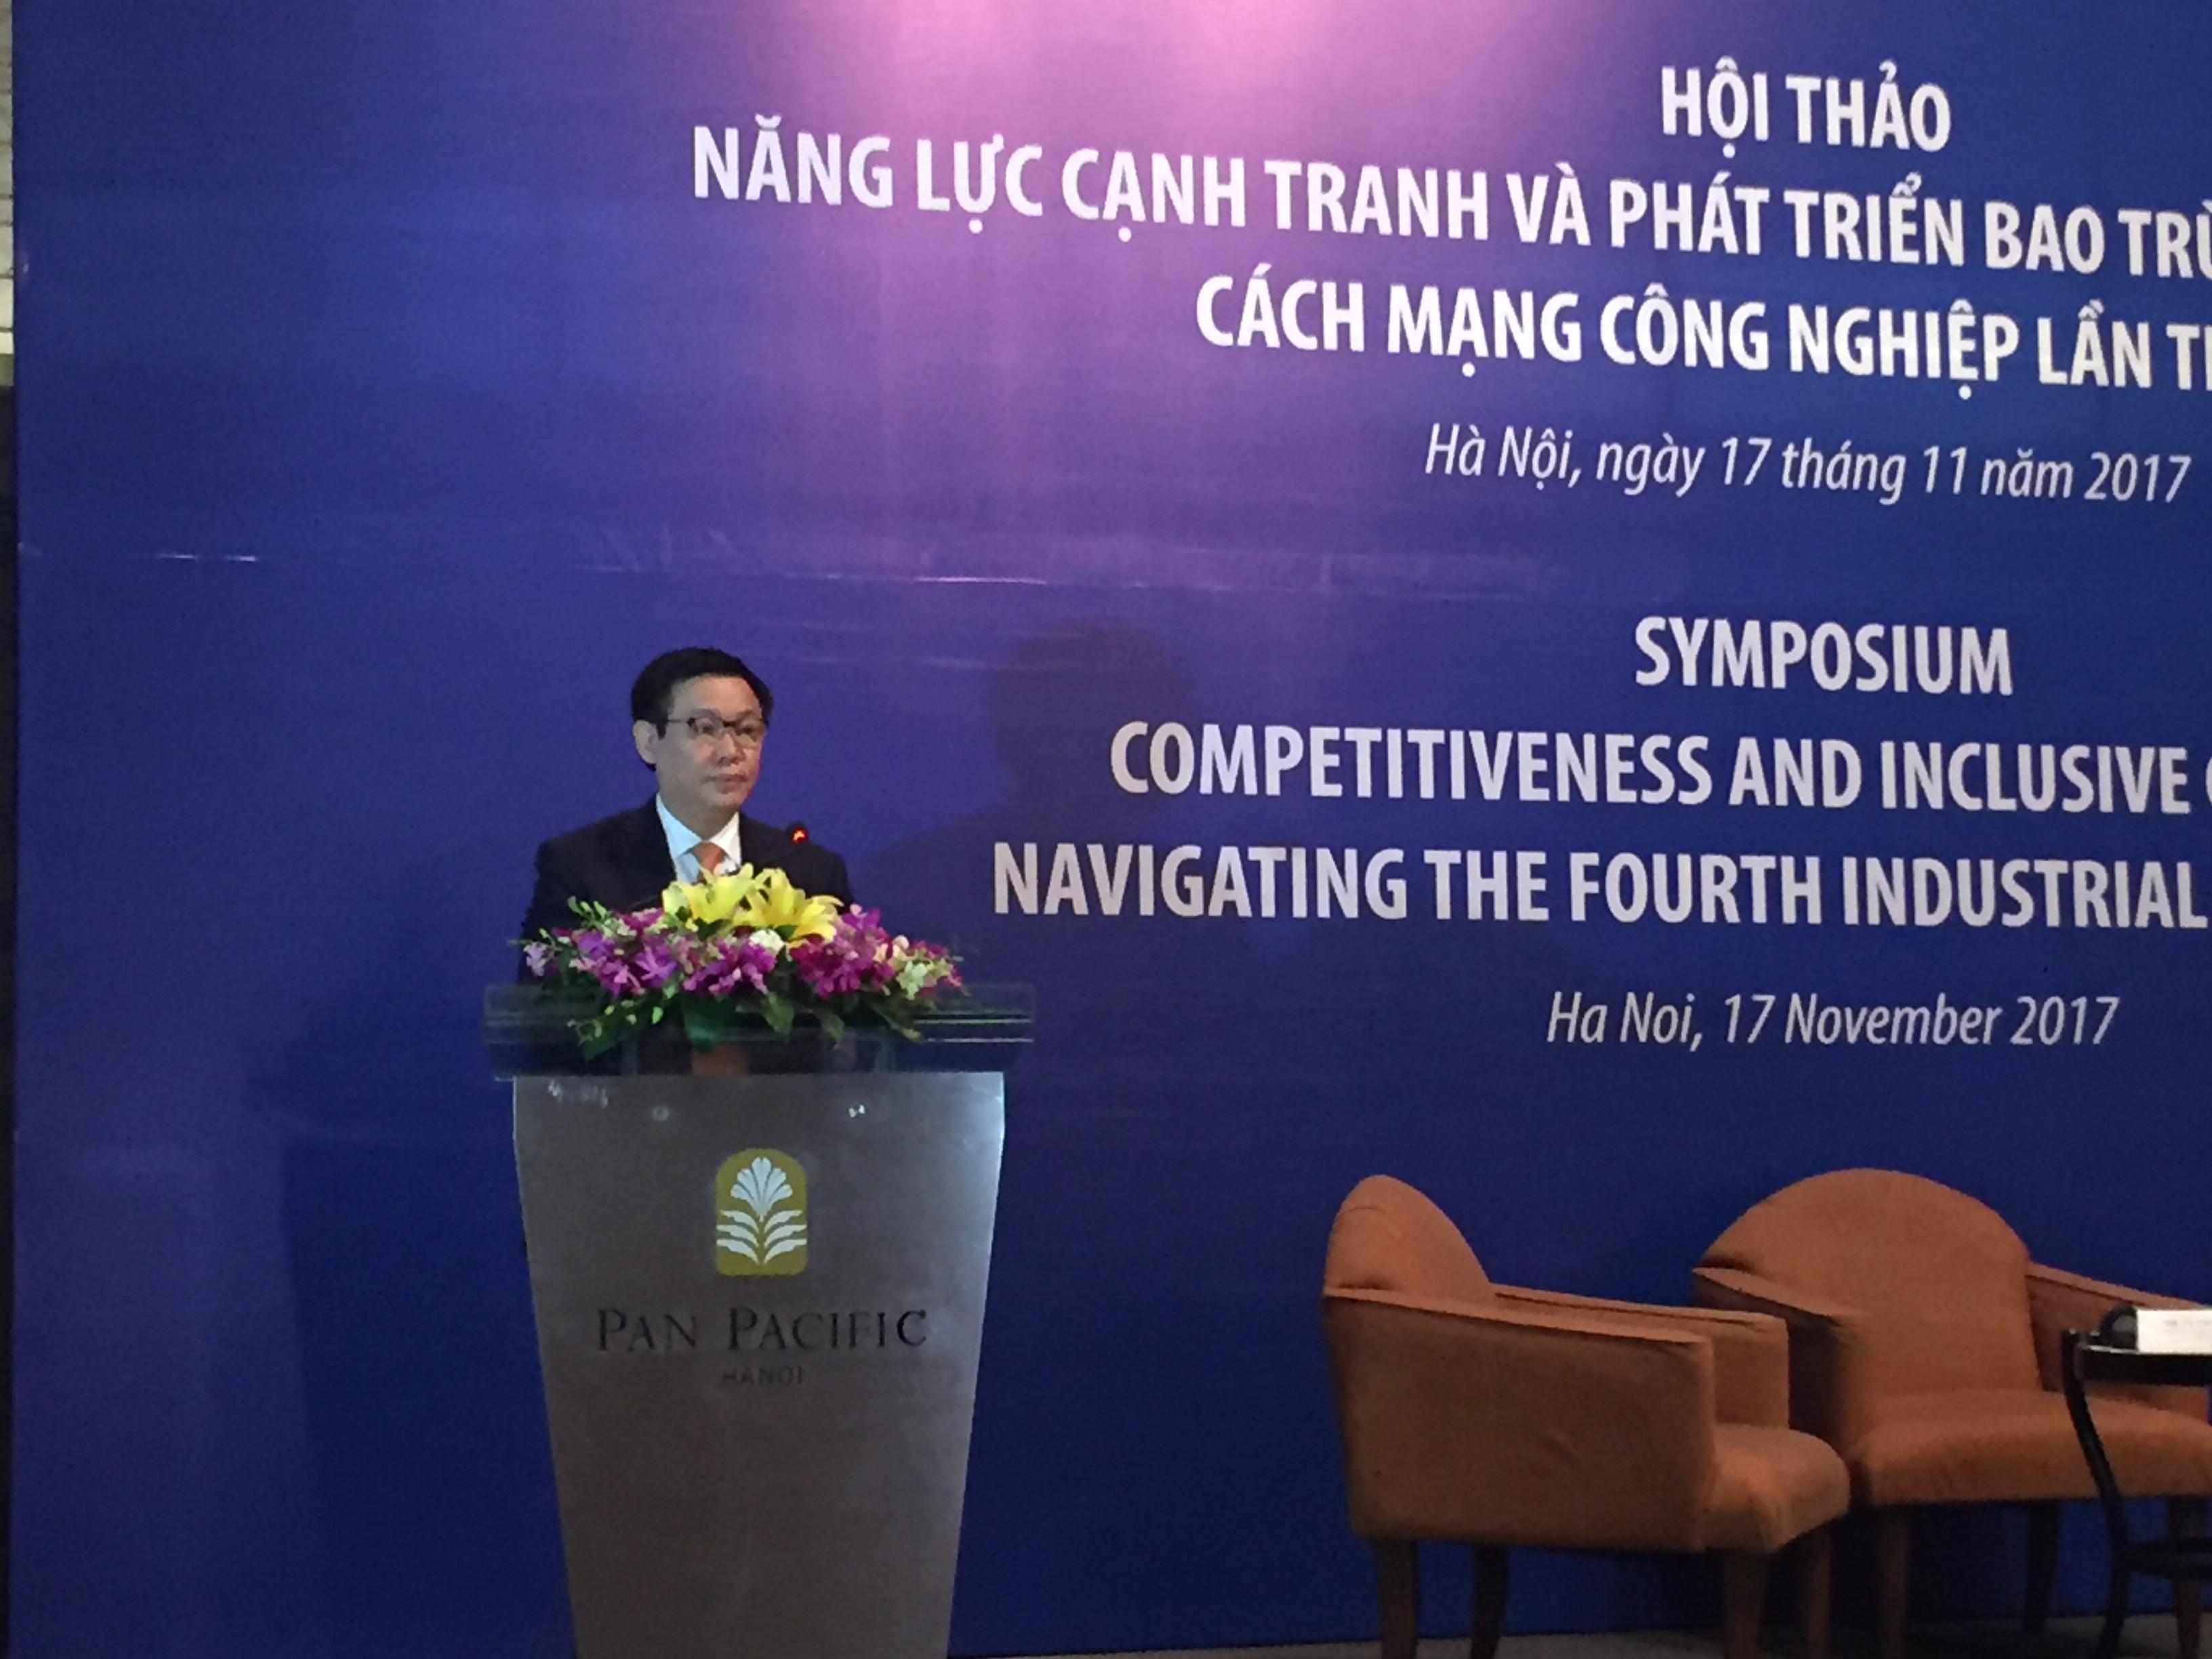 PTT Vương Đình Huệ chỉ ra 4 thách thức về năng lực cạnh tranh và phát triển của CMCN 4.0